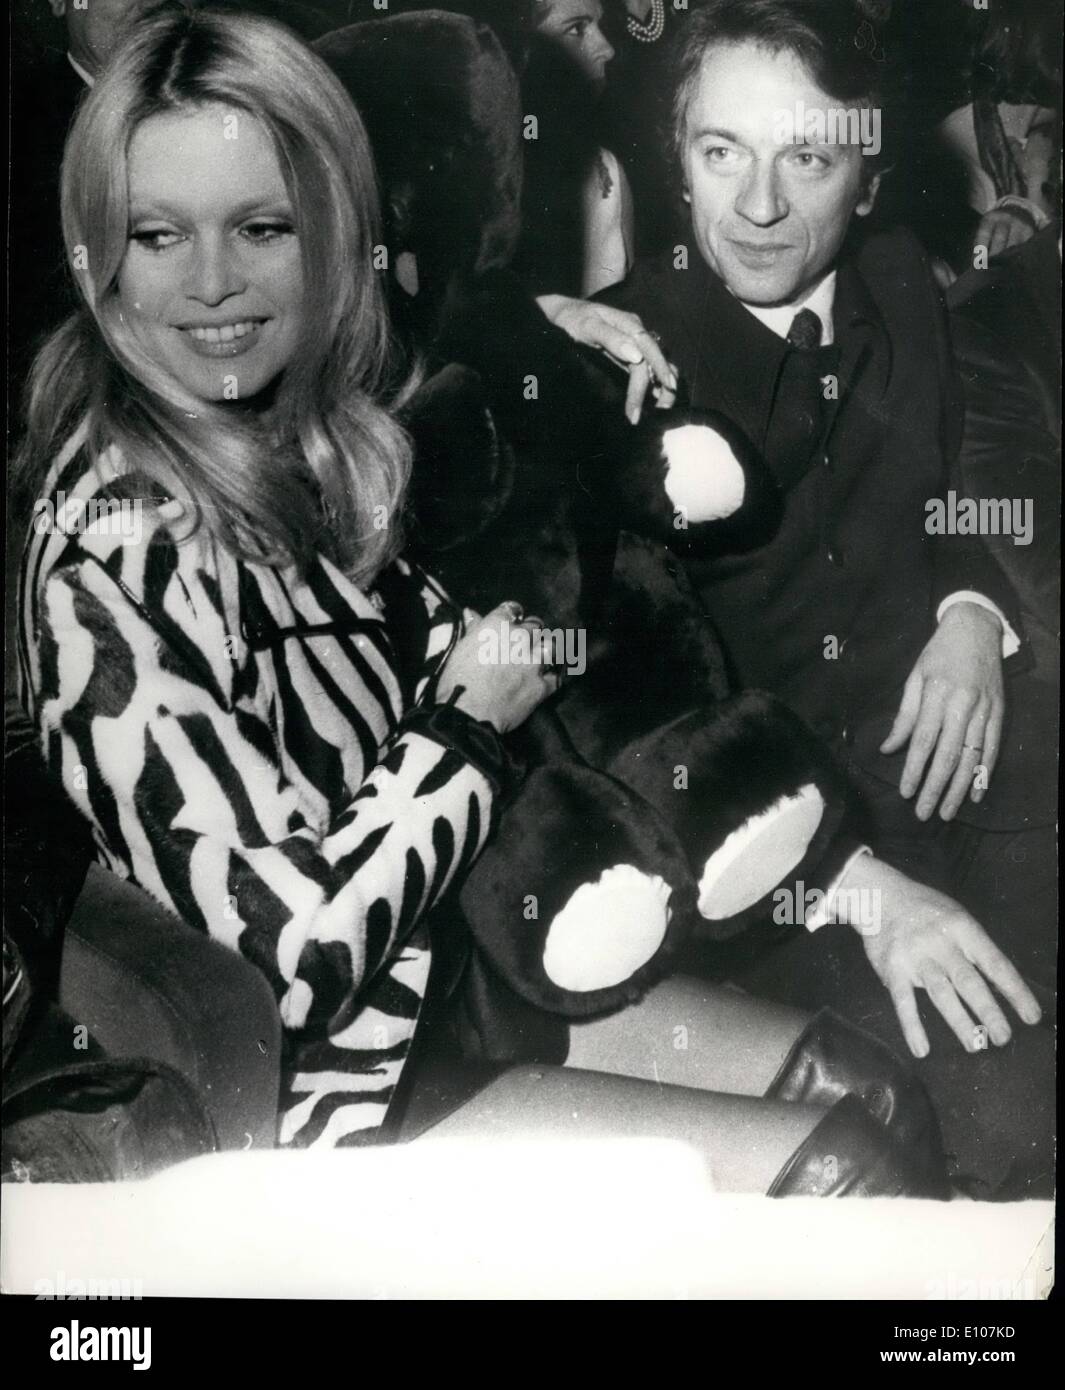 02 février 1970 - Brigitte Bardot assiste à la première de son film ''l'Ours et la poupée'' à Paris. Photo montre de câliner un grand ours en peluche Brigitte Bardot se trouve dans le cinéma à côté de sa co-star, Jean-Pierre Cassel, lorsqu'elle a assisté à la première de son nouveau film "L'ours et la poupée" à Paris. Banque D'Images